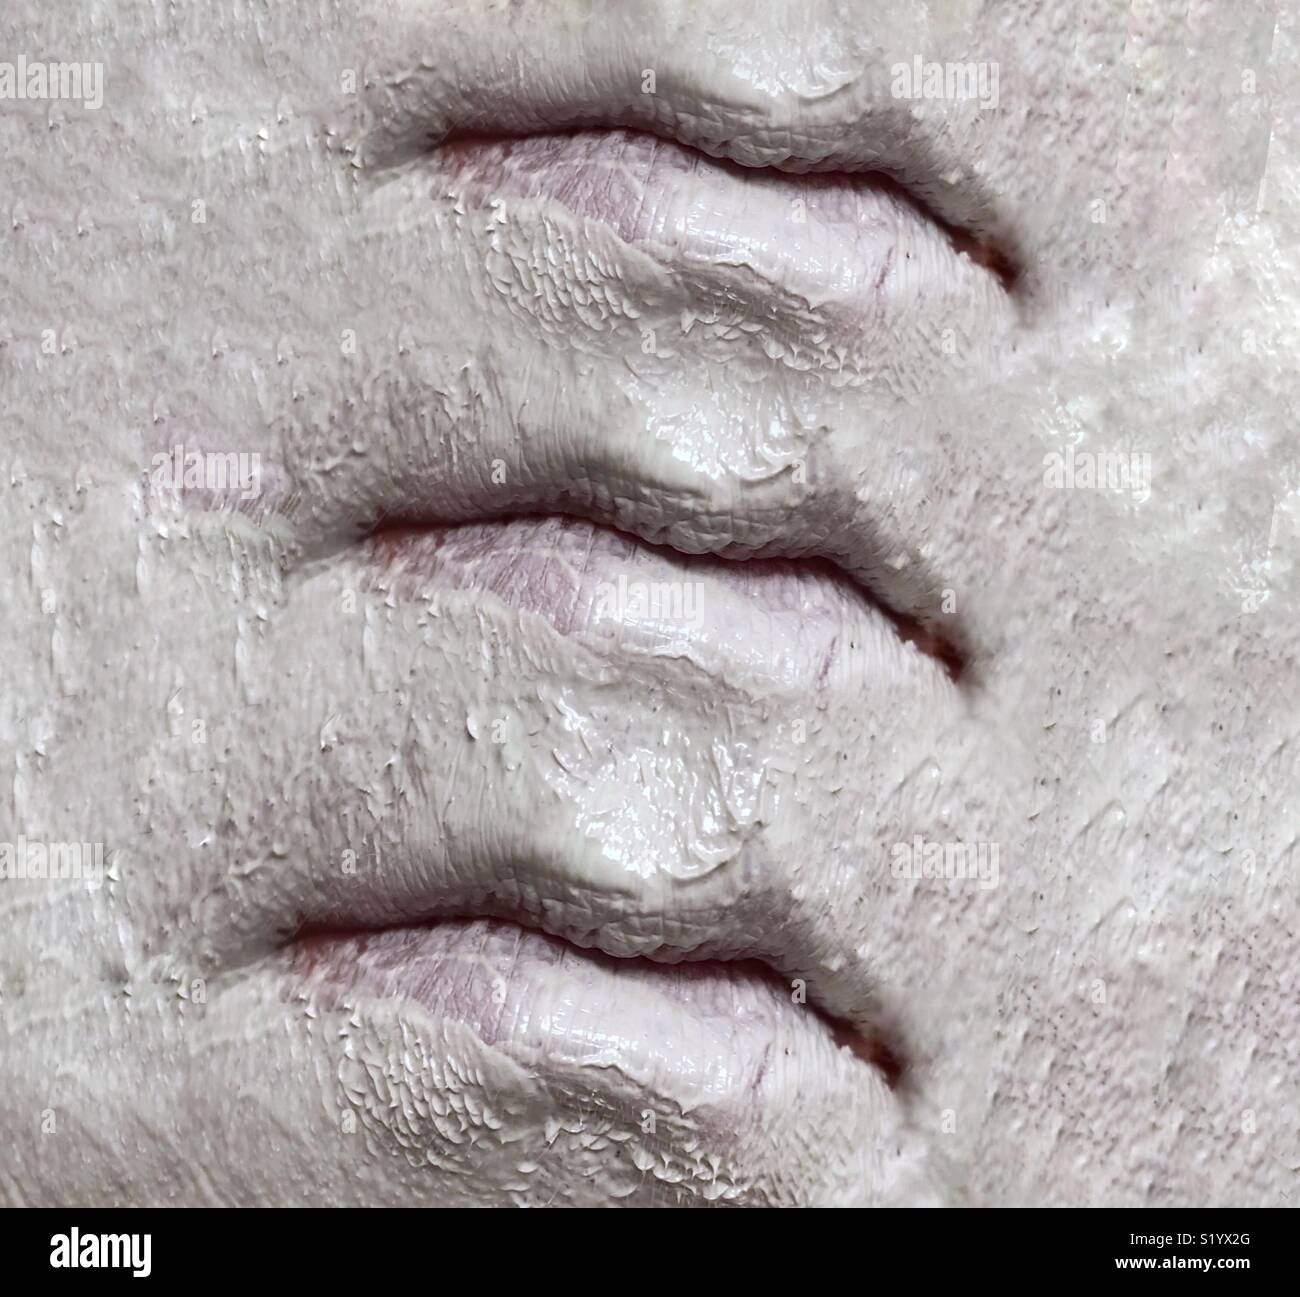 Ein abstraktes Bild von drei Sets von Lippen auf ein Gesicht in einem weißen Ton Schlamm Maske abgedeckt Stockfoto